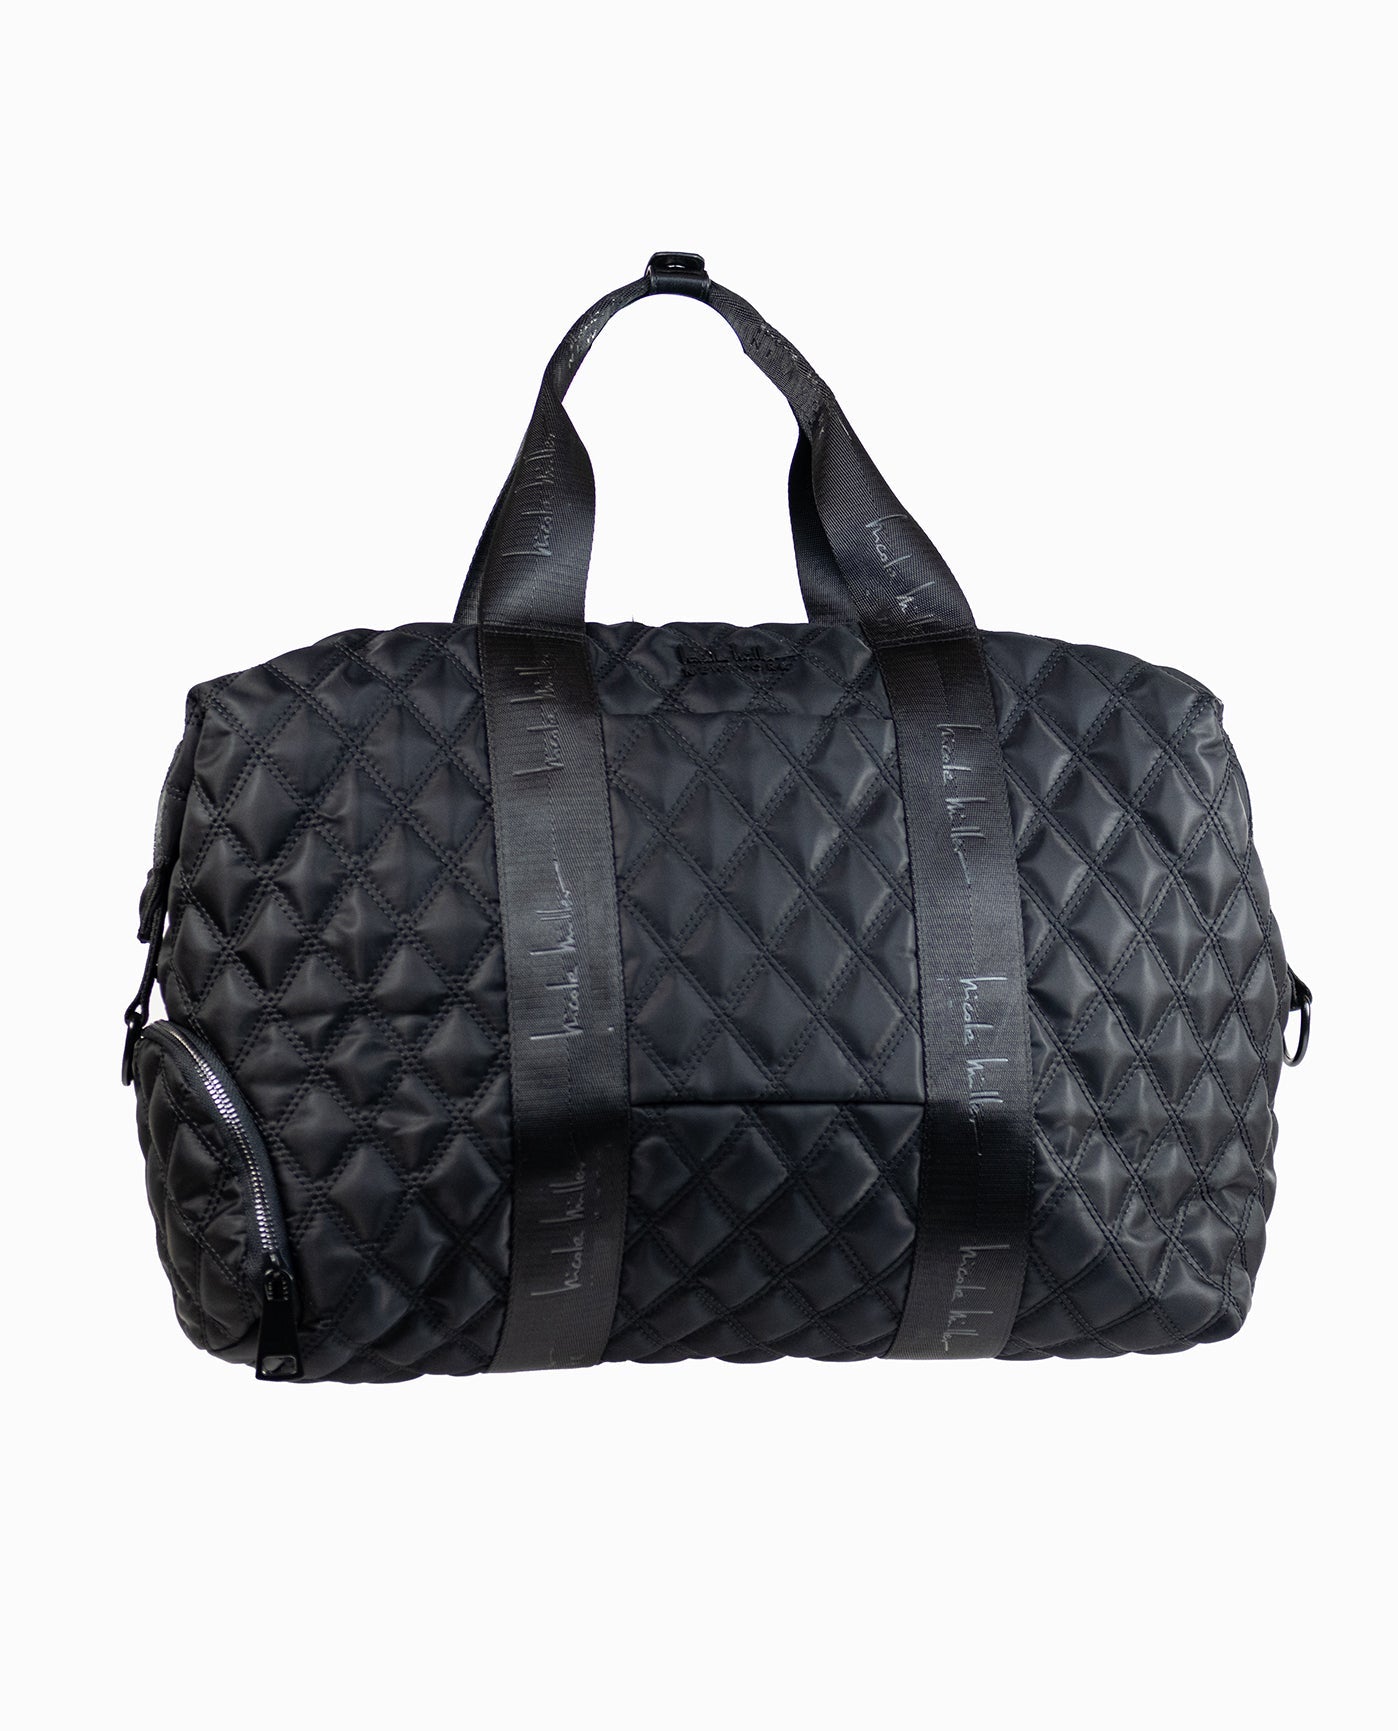 Travel Duffel Bag - Quilted Nylon Weekender Bag